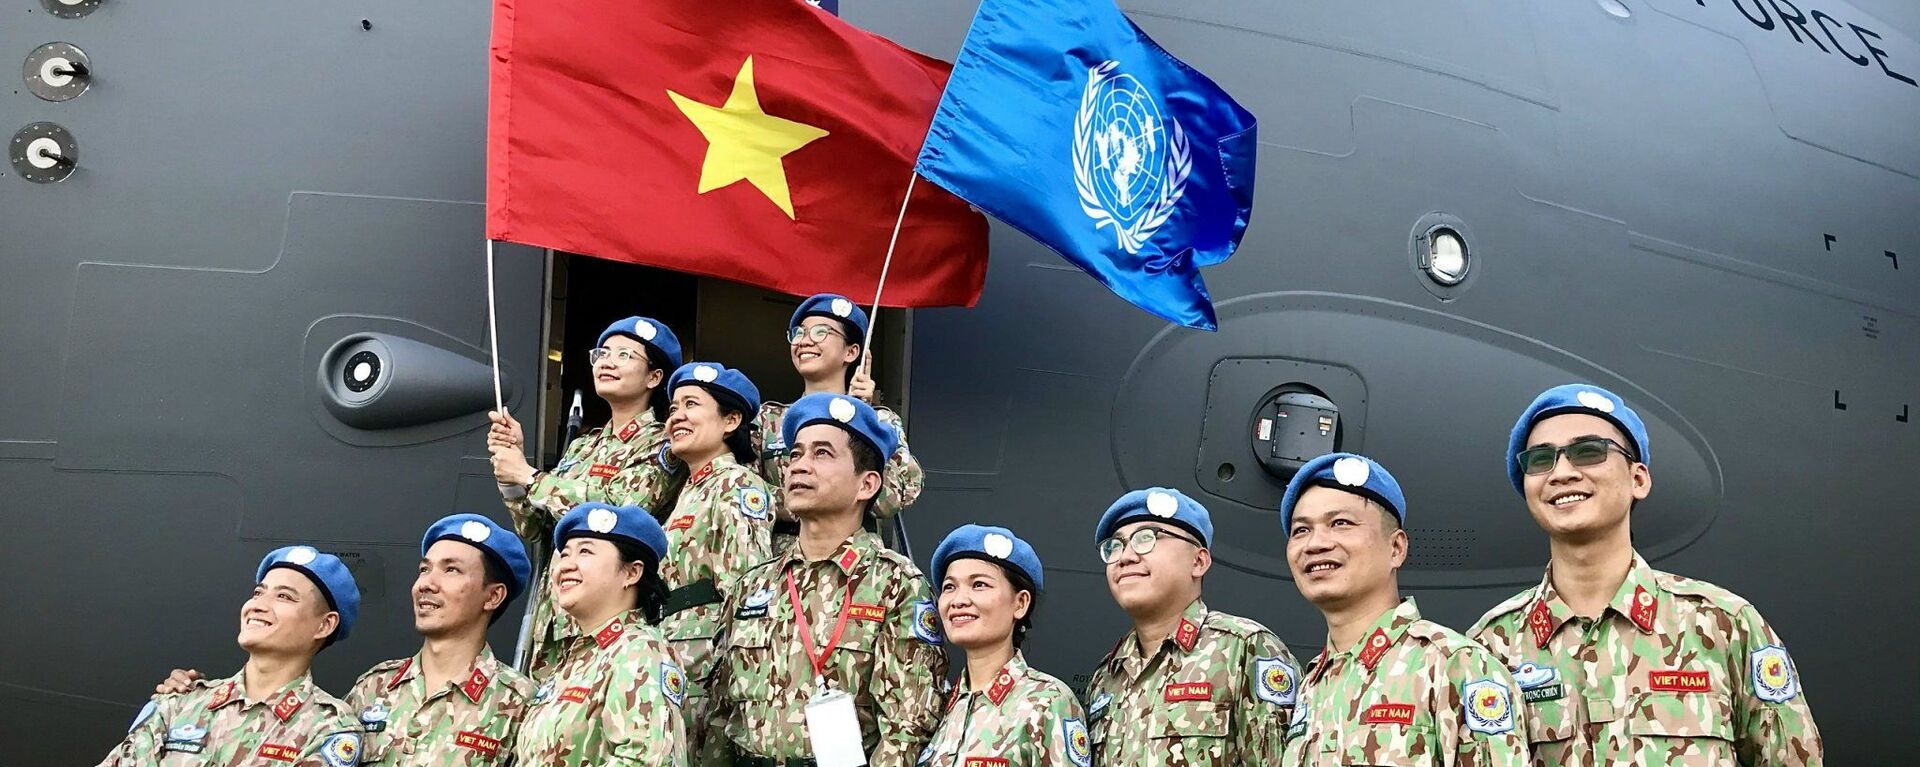 Gìn giữ hòa bình Liên hợp quốc: Điểm sáng của Việt Nam trong đối ngoại quốc phòng. - Sputnik Việt Nam, 1920, 18.04.2022